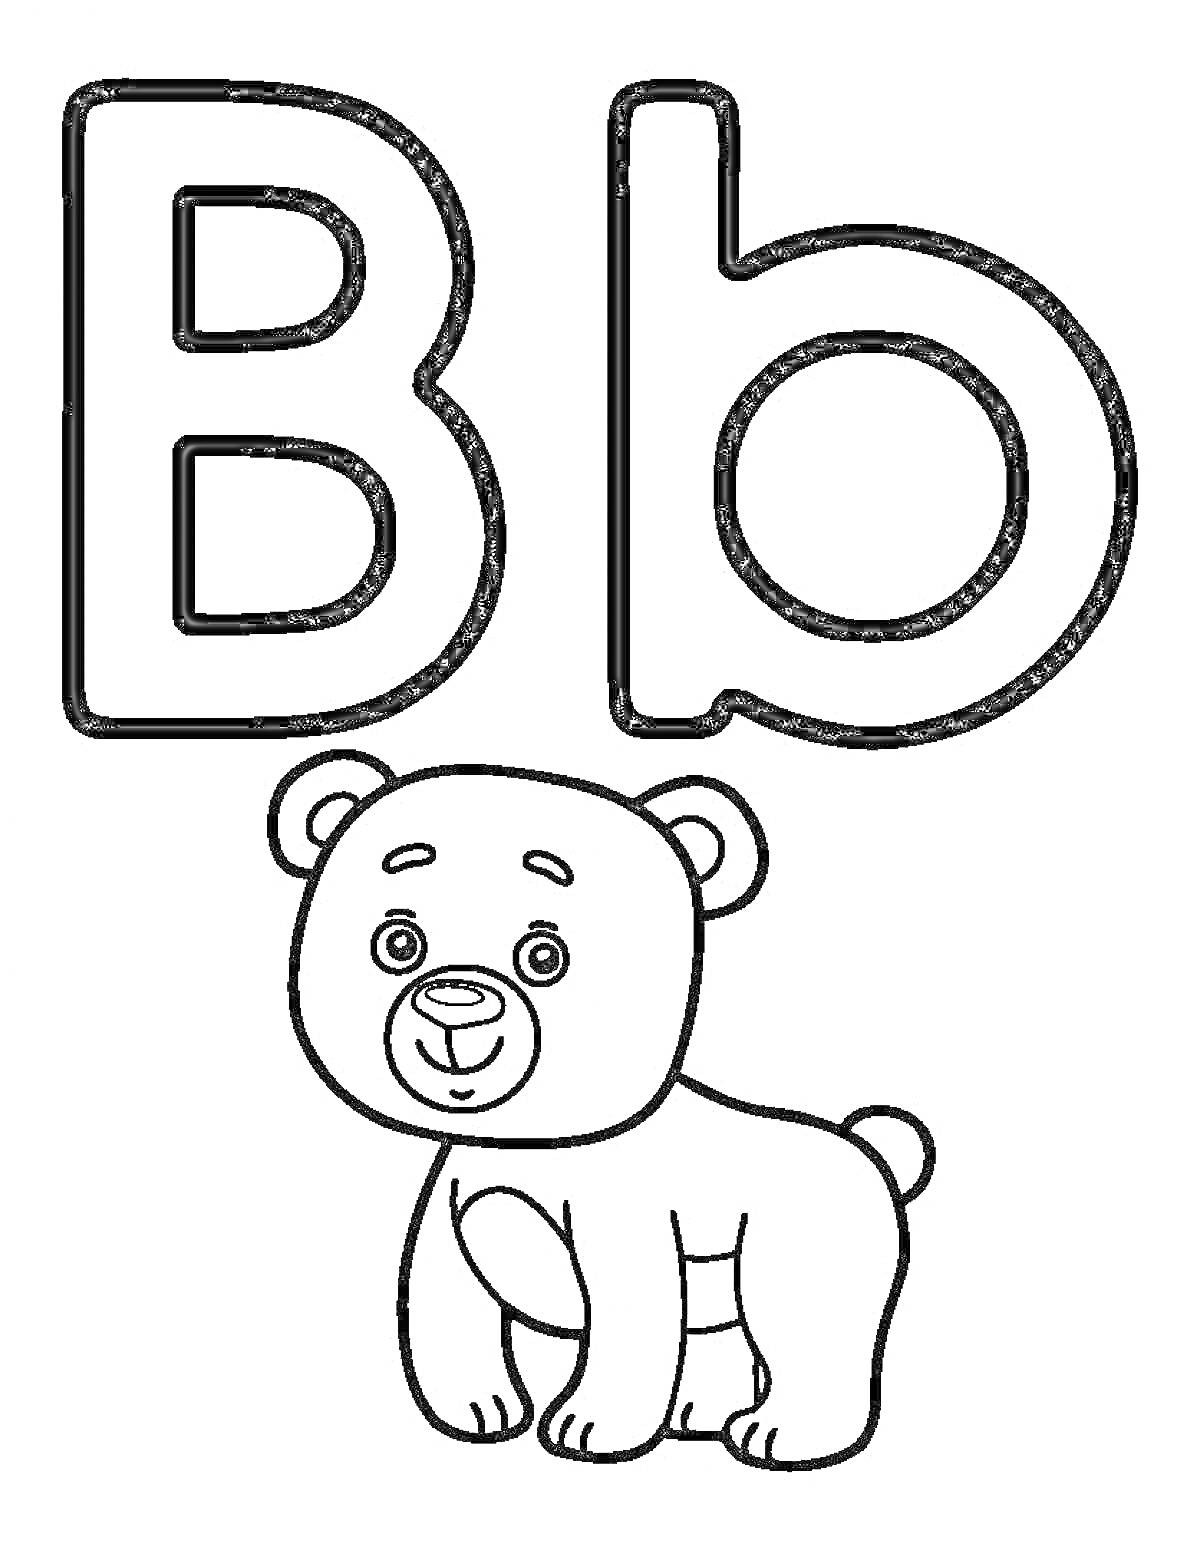 Раскраска англоязычная буква B и медвежонок